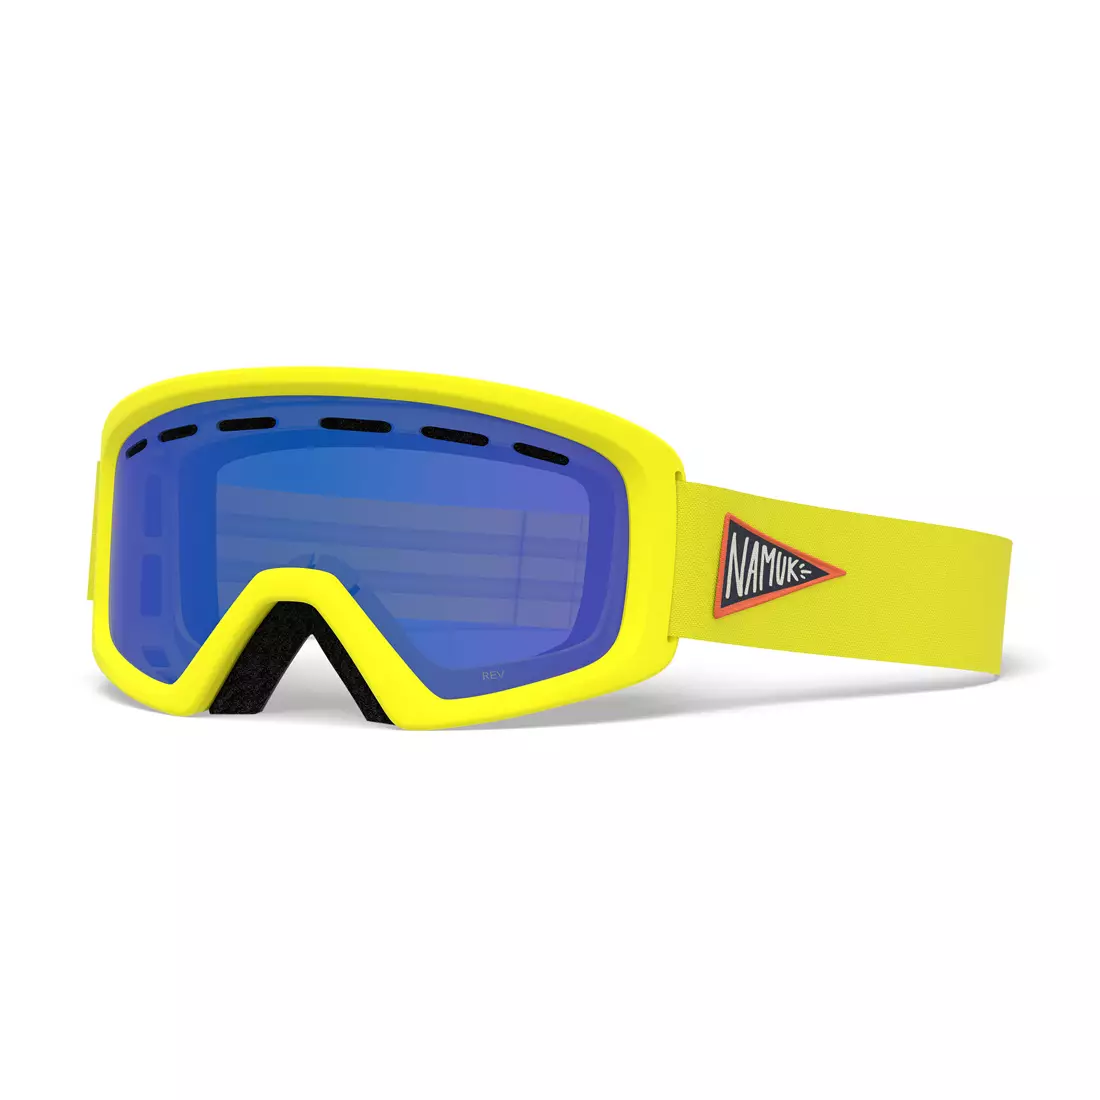 Juniorské lyžařské / snowboardové brýle REV NAMUK YELLOW GR-7105433